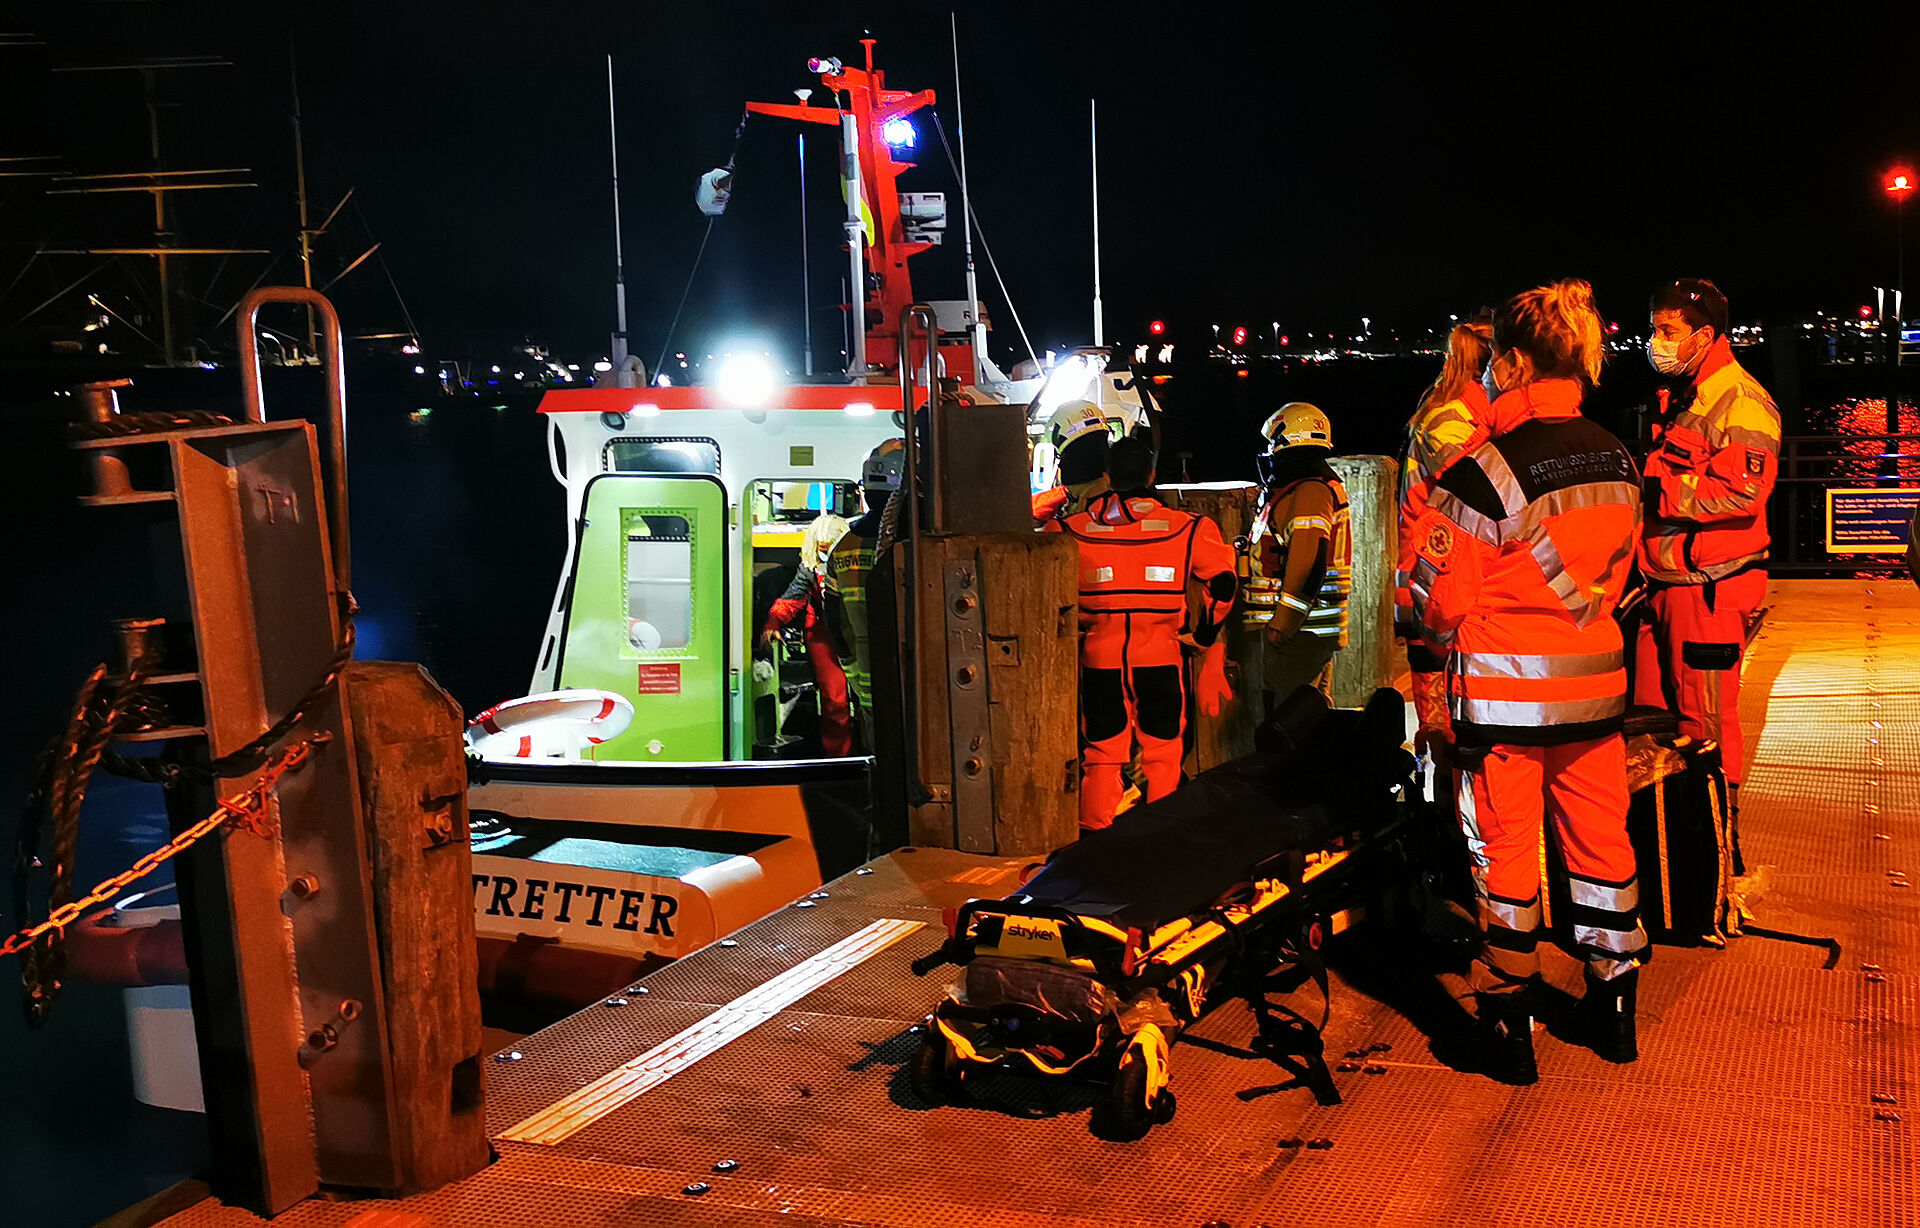 Nächtliche Rettungsaktion im Hafen, nachdem ein Angelboot gekentert ist